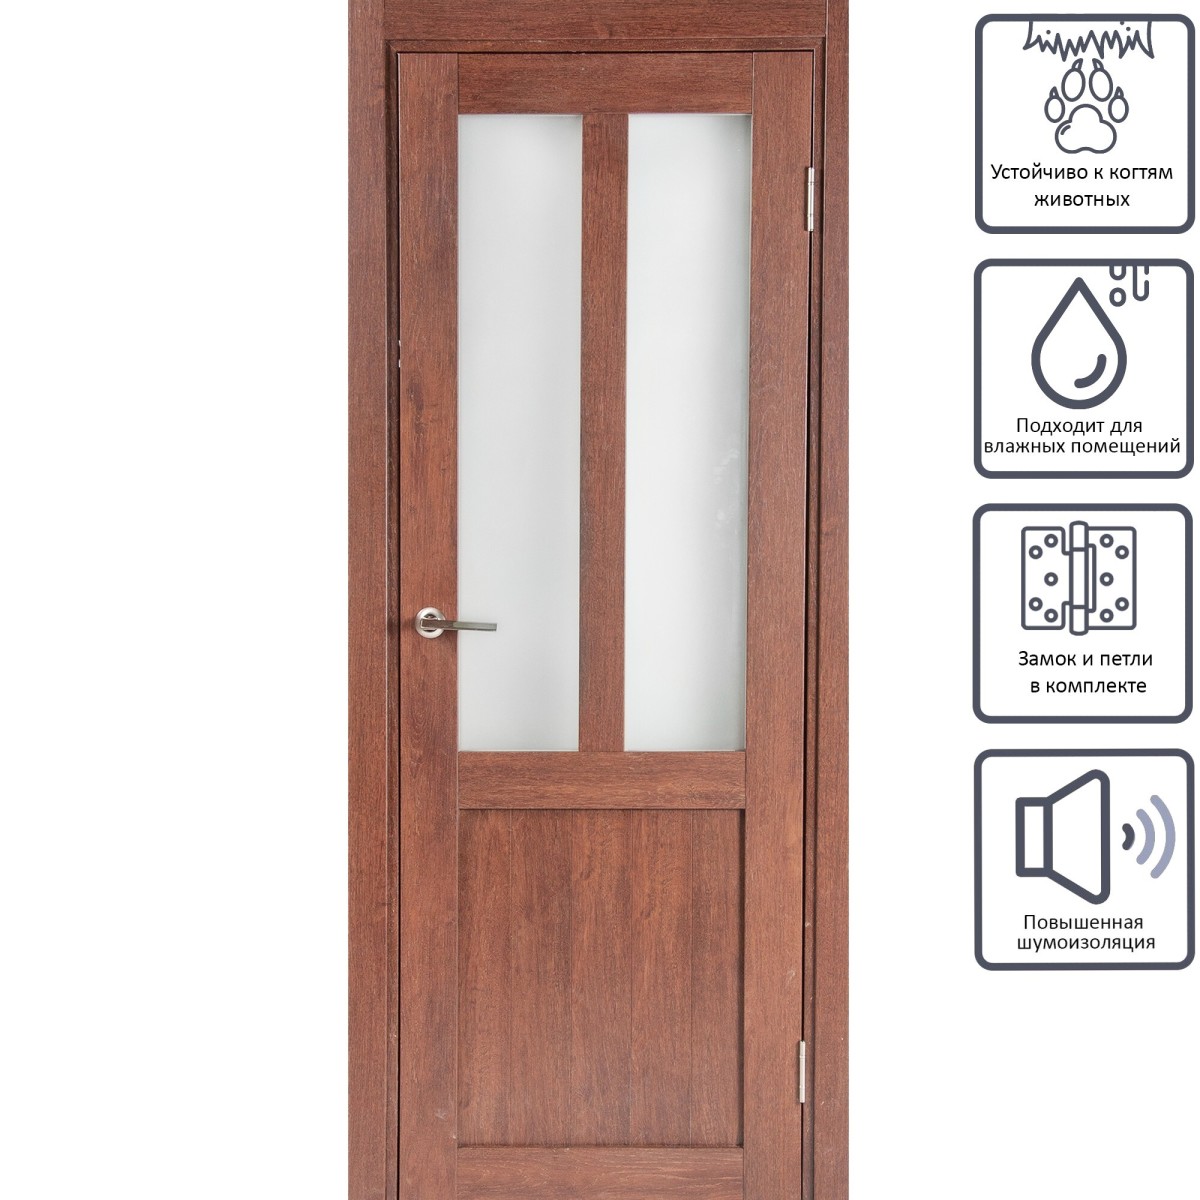 Дверь межкомнатная остеклённая Кантри 60x200 см, ПВХ, цвет дуб сан-томе, с фурнитурой